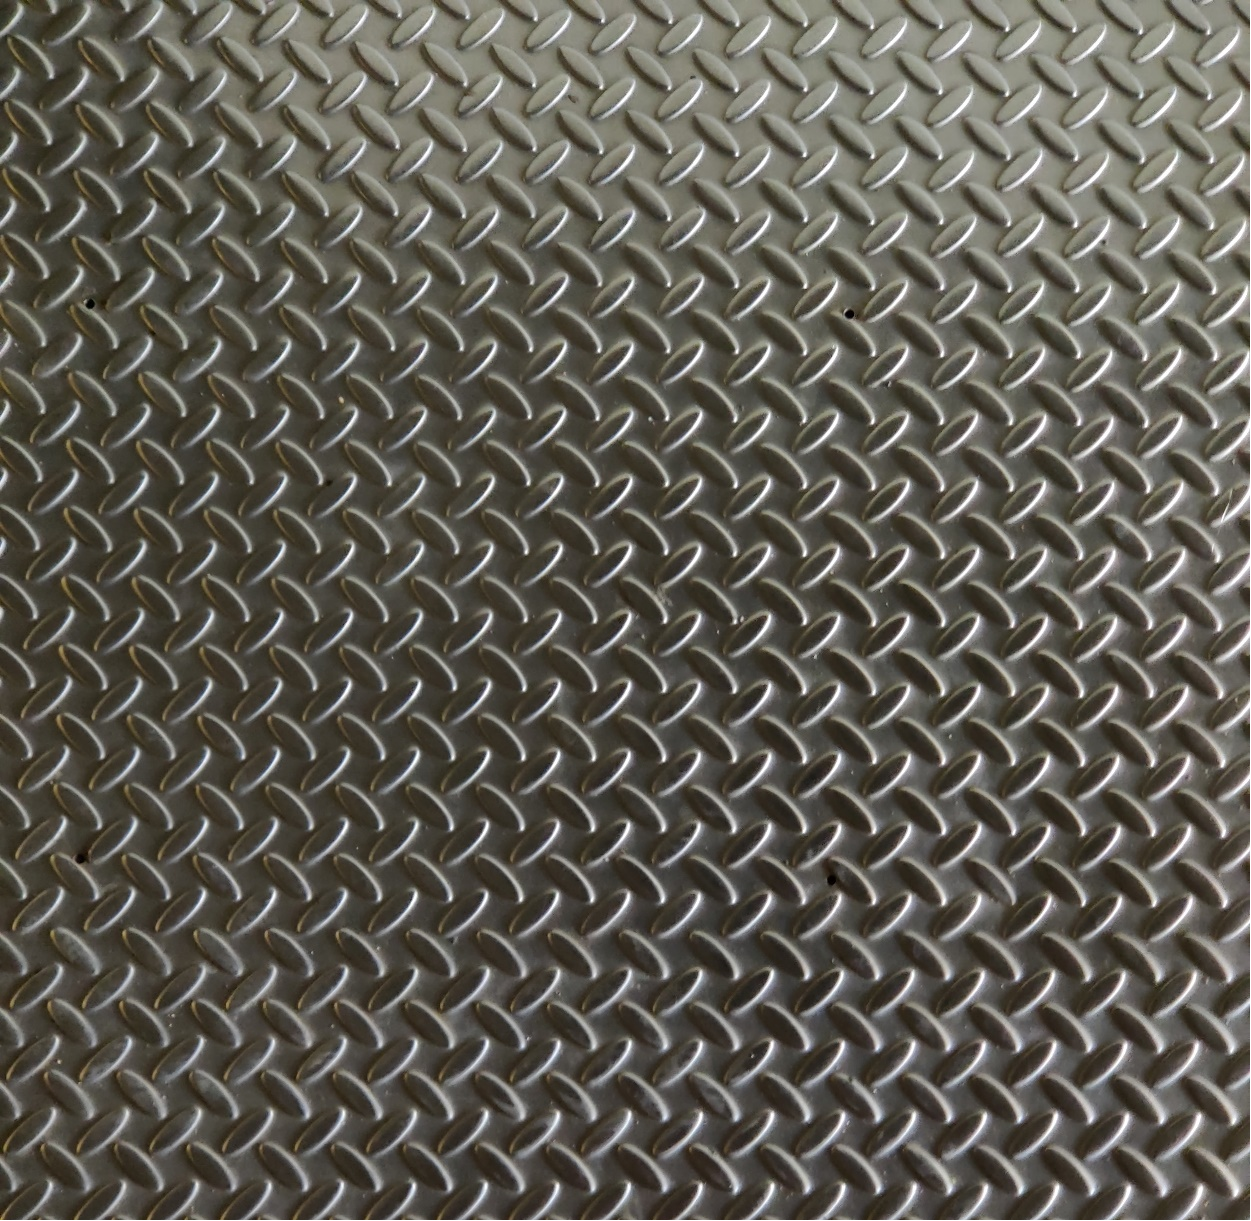 Closeup of a metal sheet.